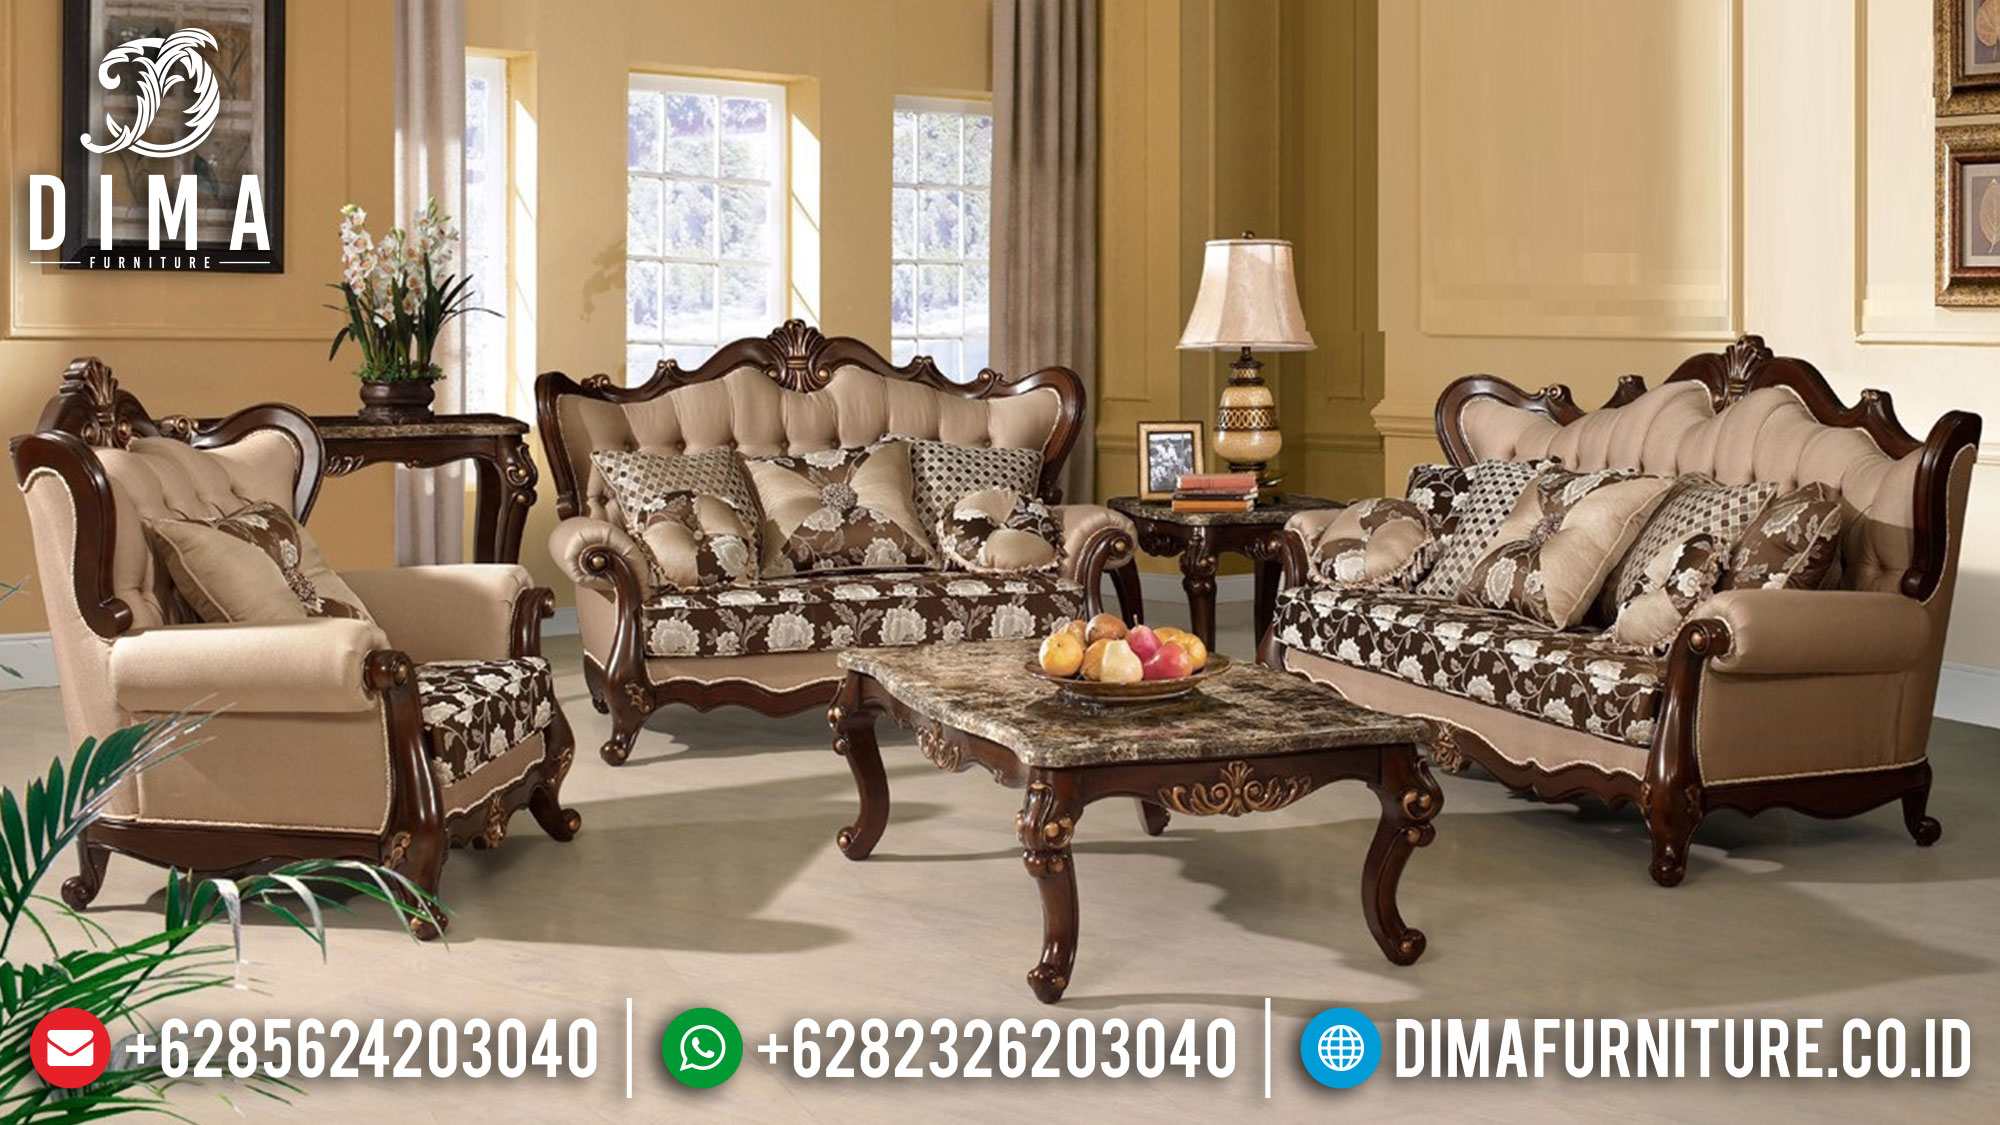 Best Seller Sofa Tamu Mewah Jati Natural Classic Luxury Mebel Jepara Mm-0919